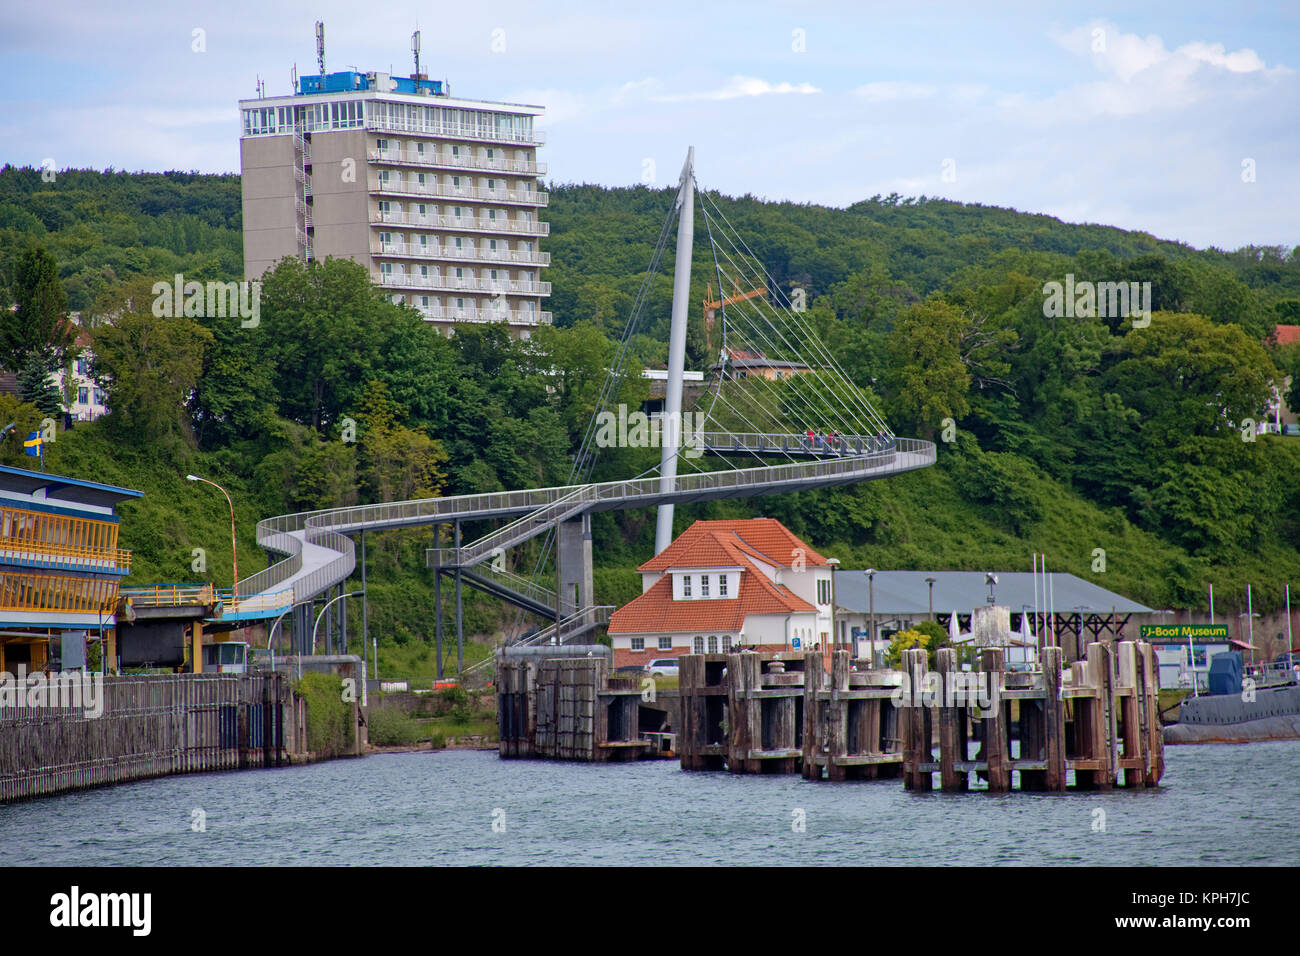 Hotel Ruegen et passerelle, connectez le port avec la ville, l'île de Rügen, Sassnitz, Mecklembourg-Poméranie-Occidentale, Mer Baltique, Allemagne Banque D'Images